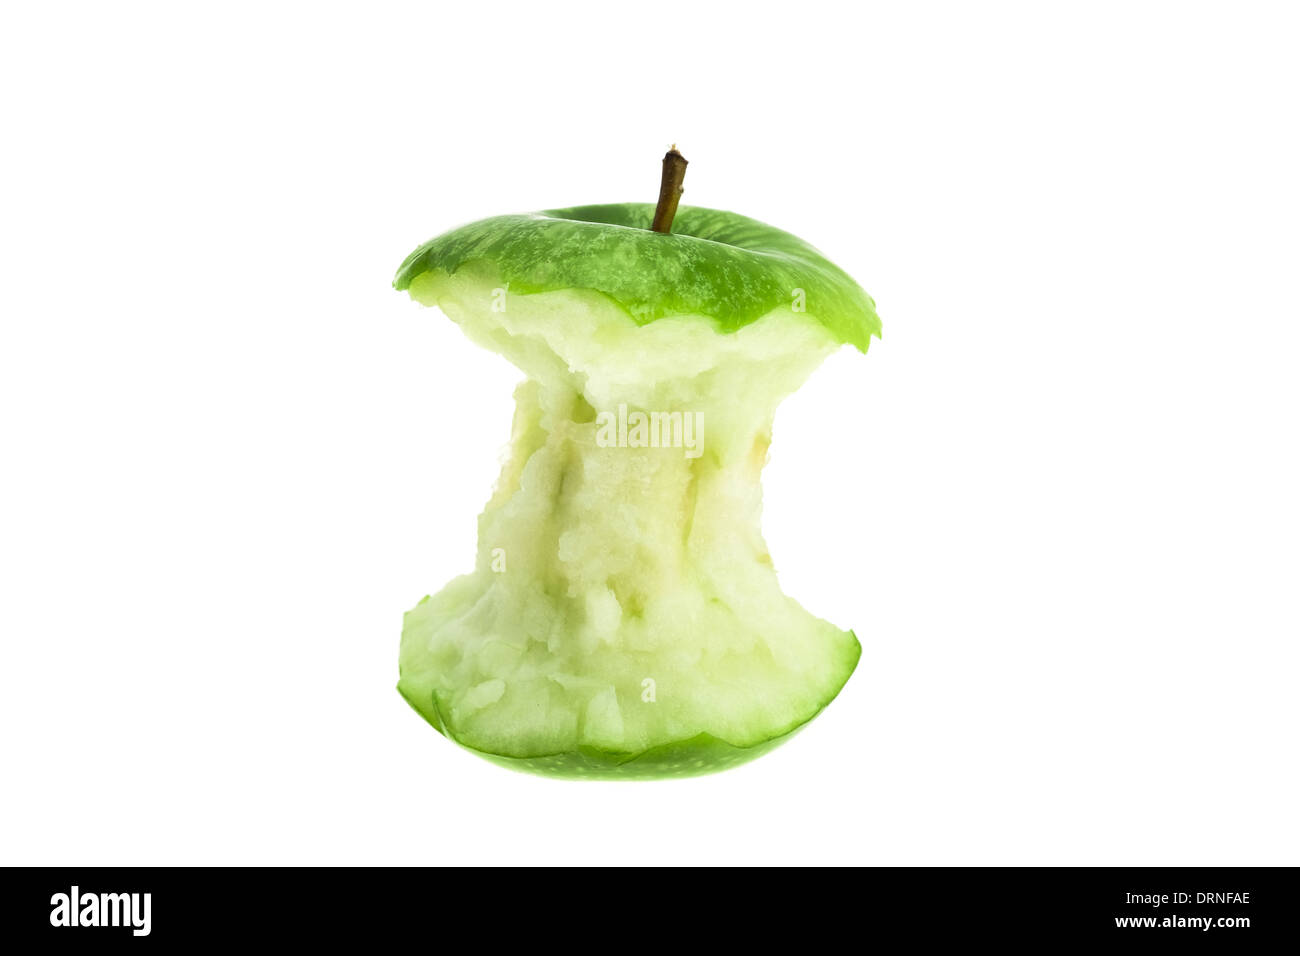 Una mangiata green apple core - studio shot con uno sfondo bianco Foto Stock